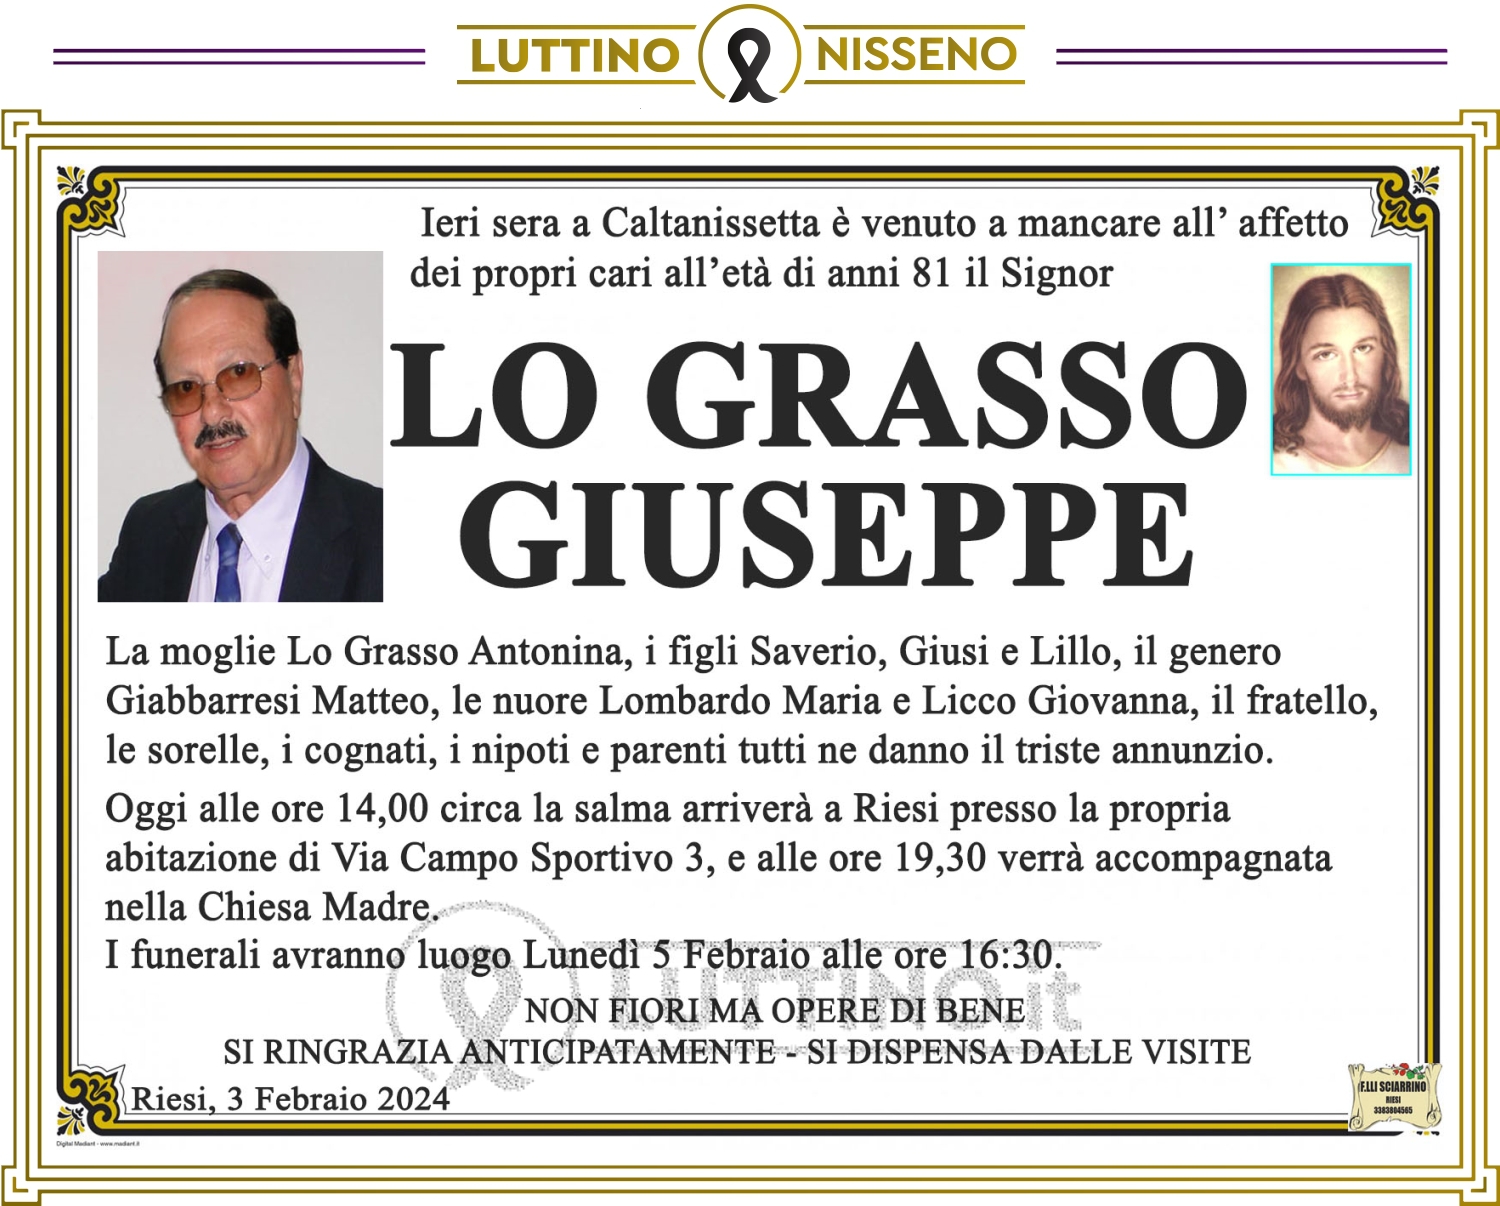 Giuseppe Lo Grasso